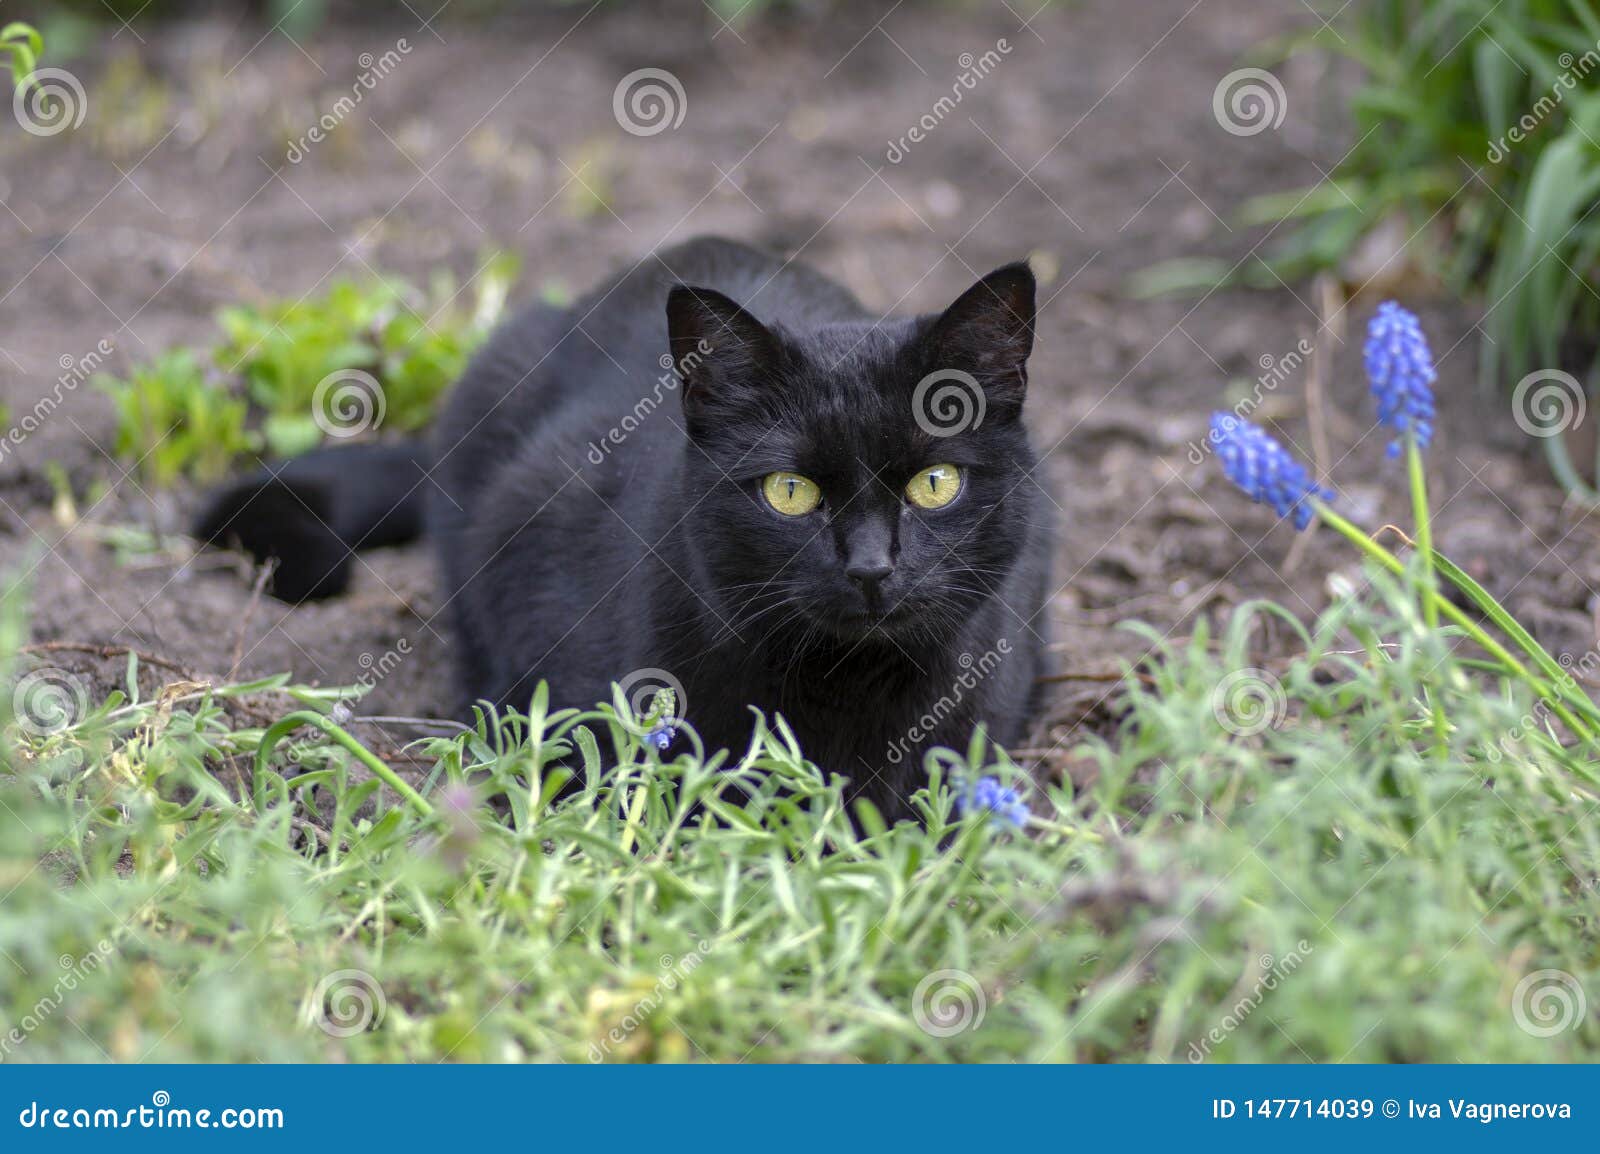 Black Cat Lie In Wait In The Garden Dark Beast With Light Green